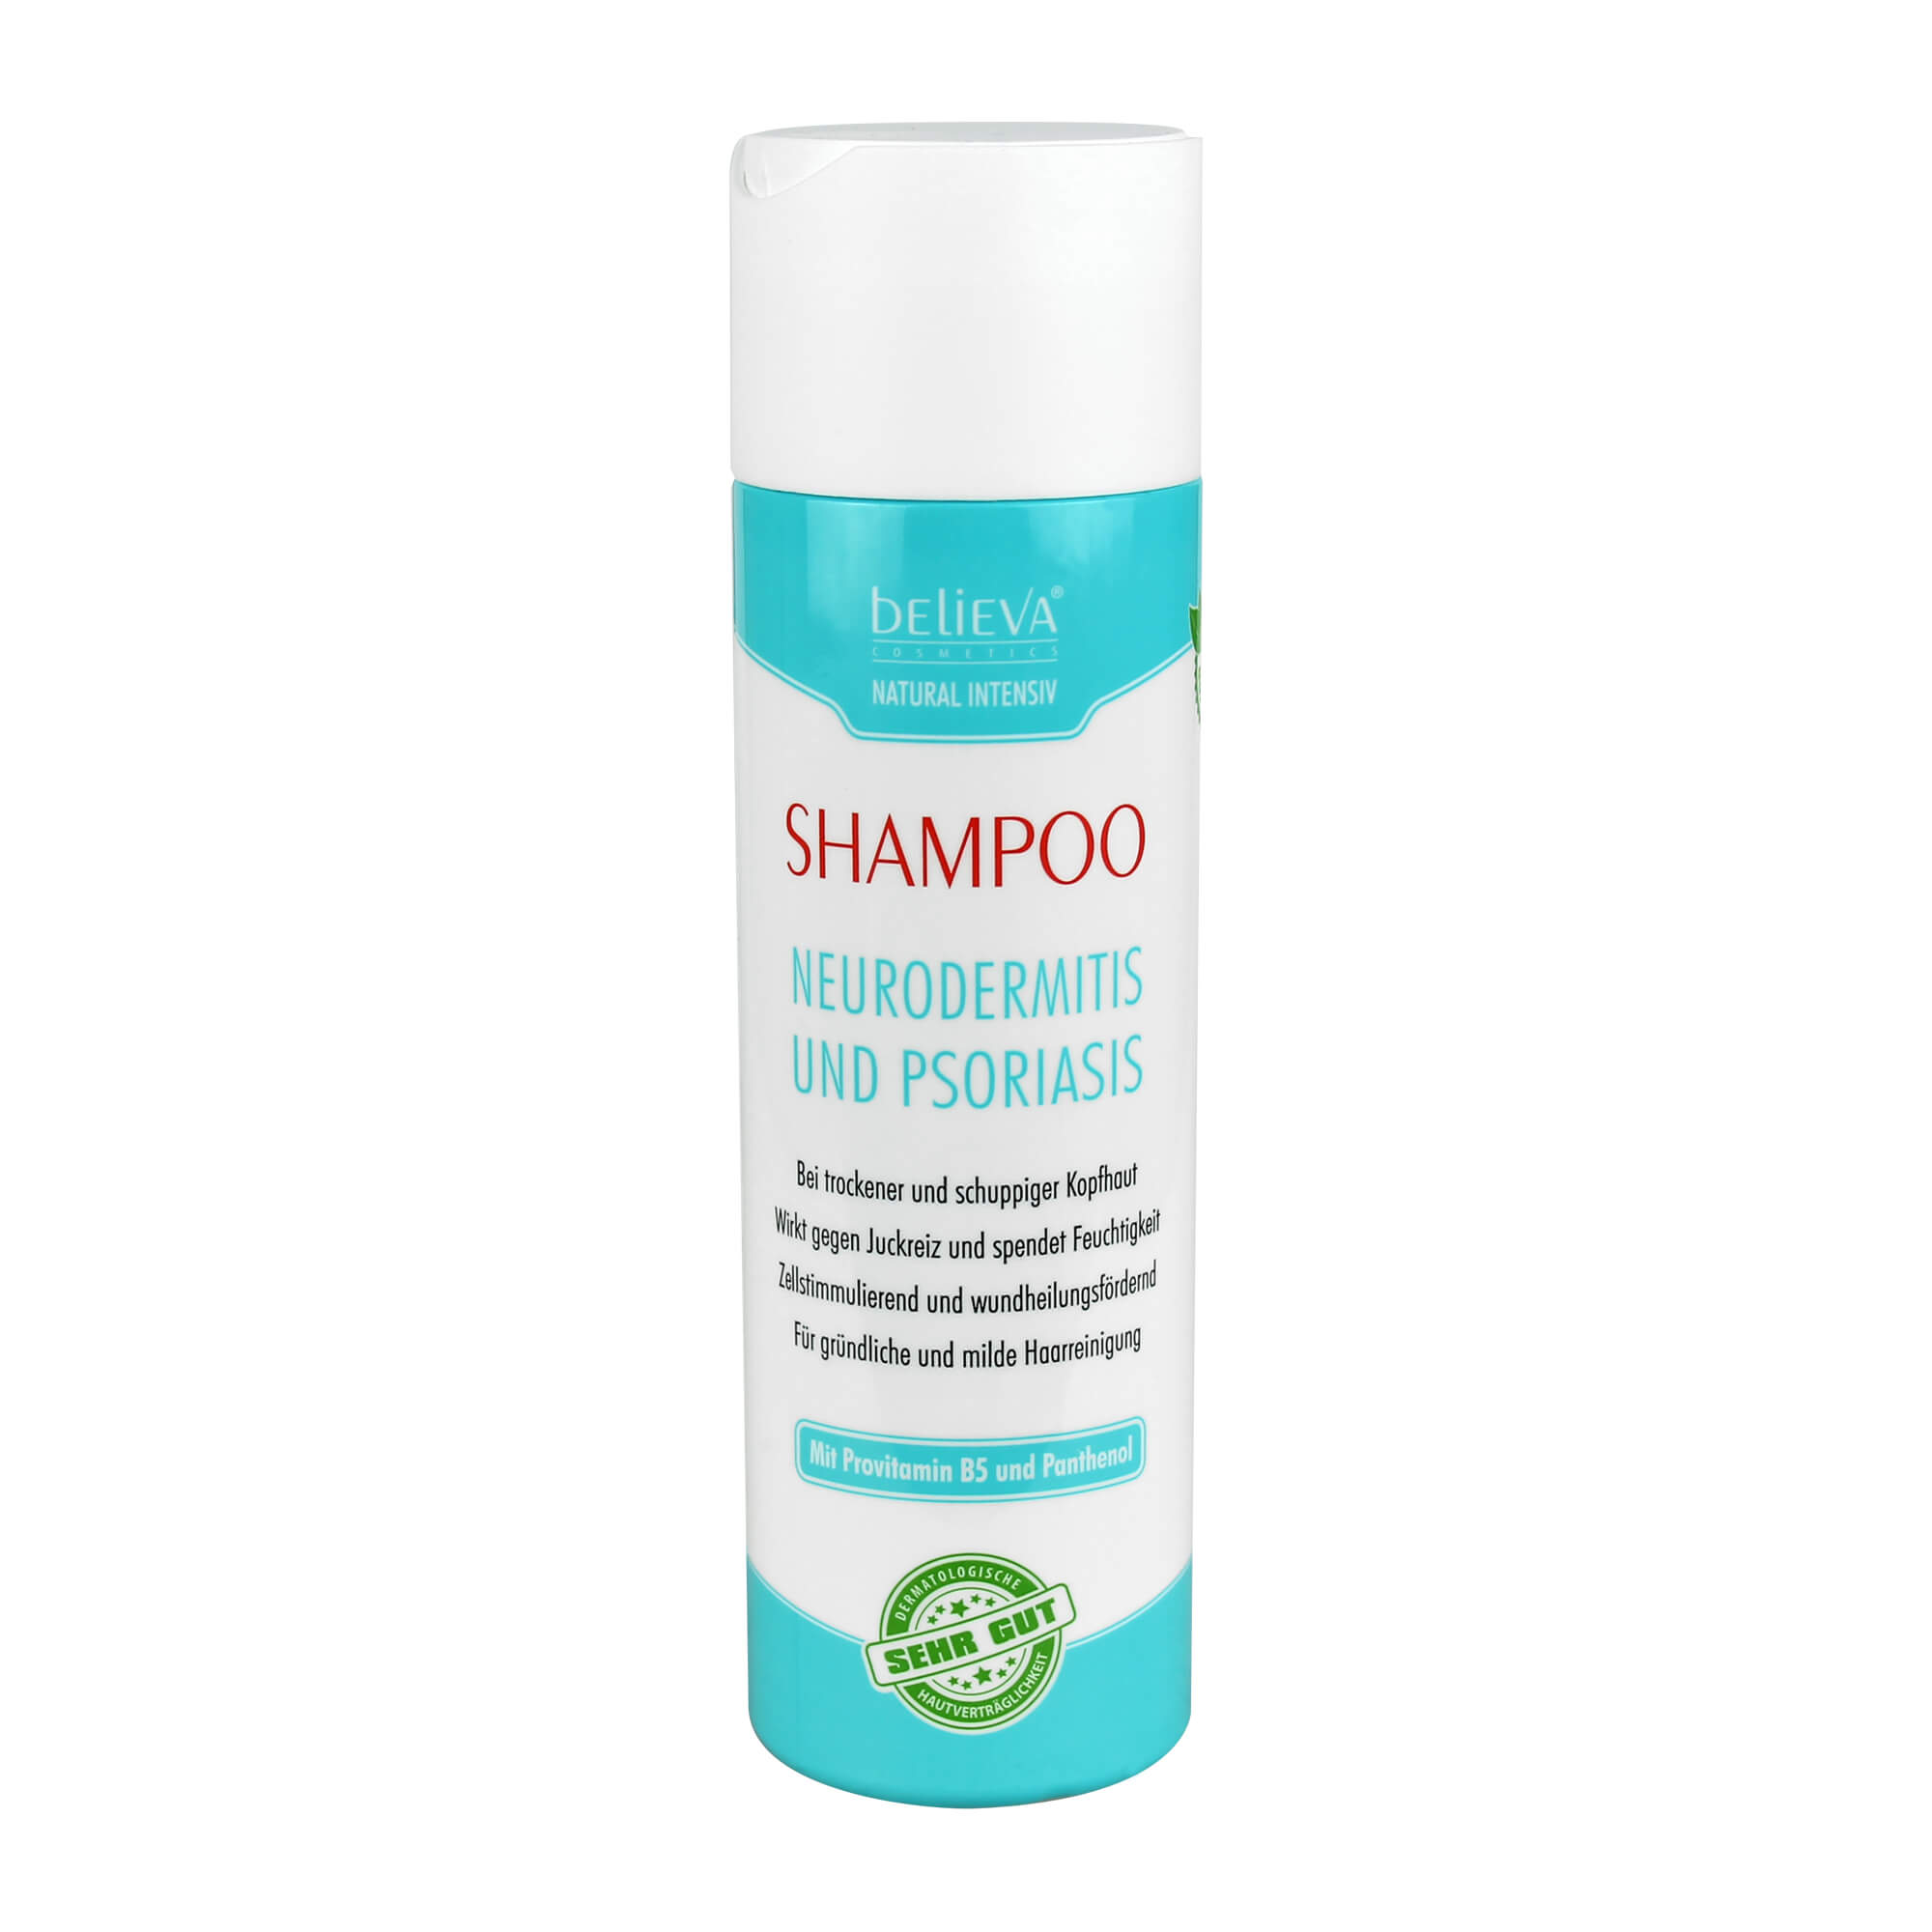 Shampoo bei trockener und schuppiger Kopfhaut.